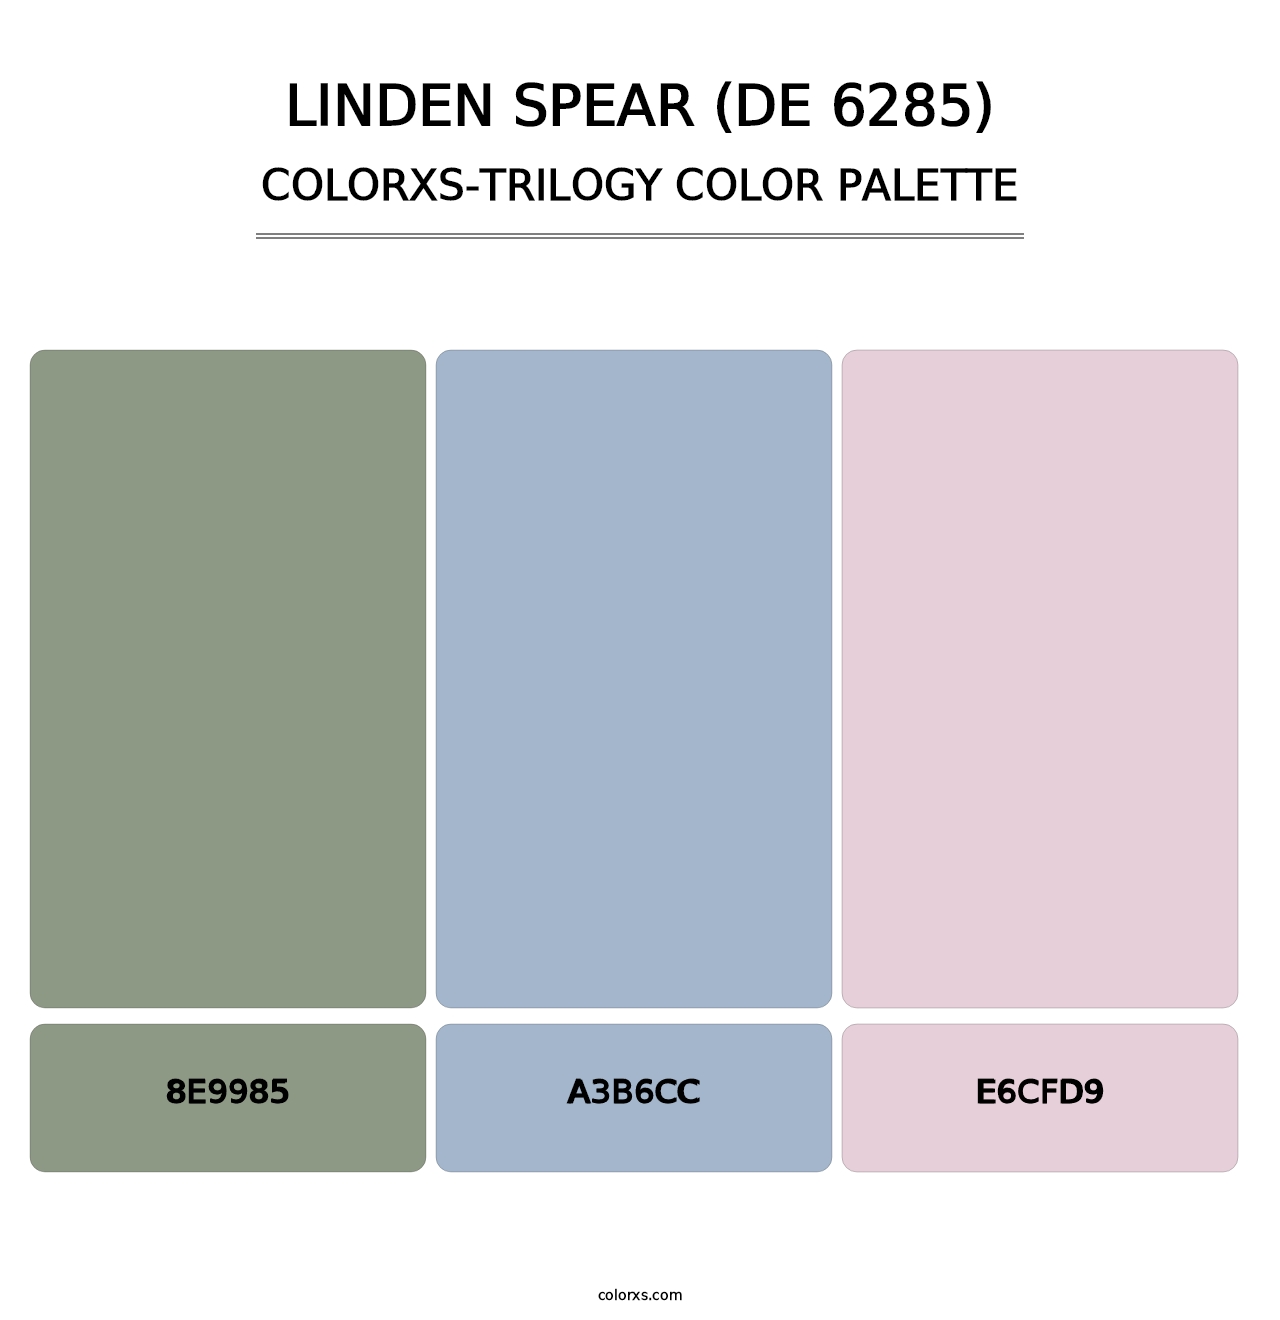 Linden Spear (DE 6285) - Colorxs Trilogy Palette